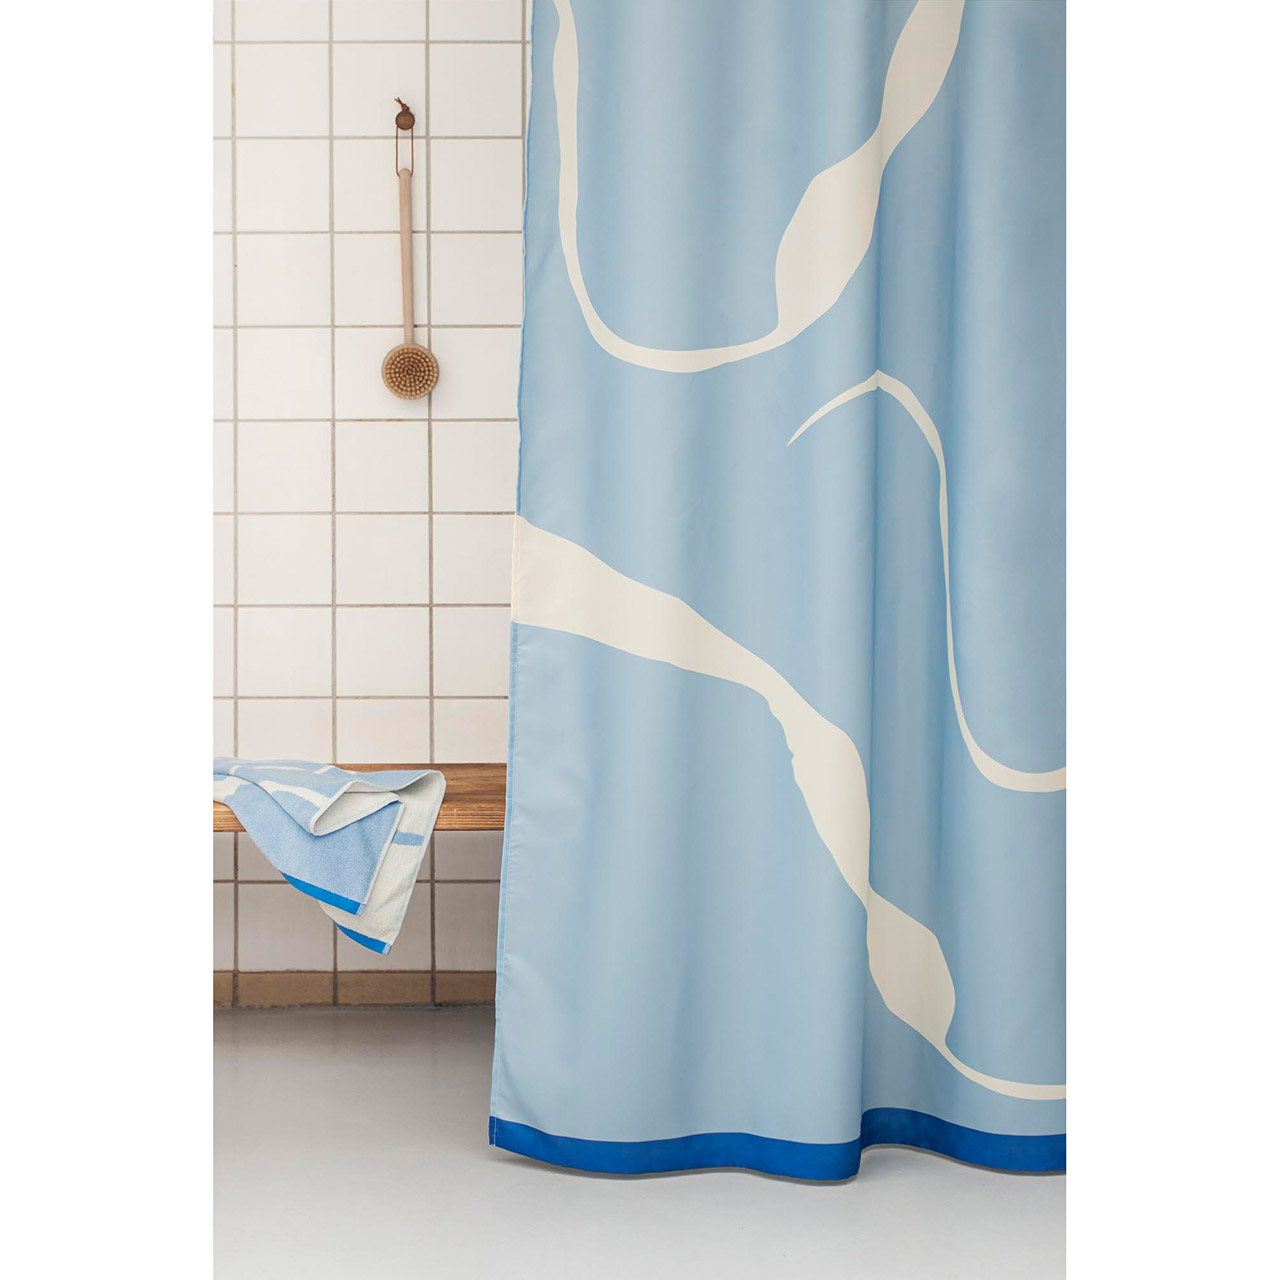 Duschvorhang.de, Nova Duschvorhang Textil Arte 150x200 blau | einfach gute Duschvorhänge